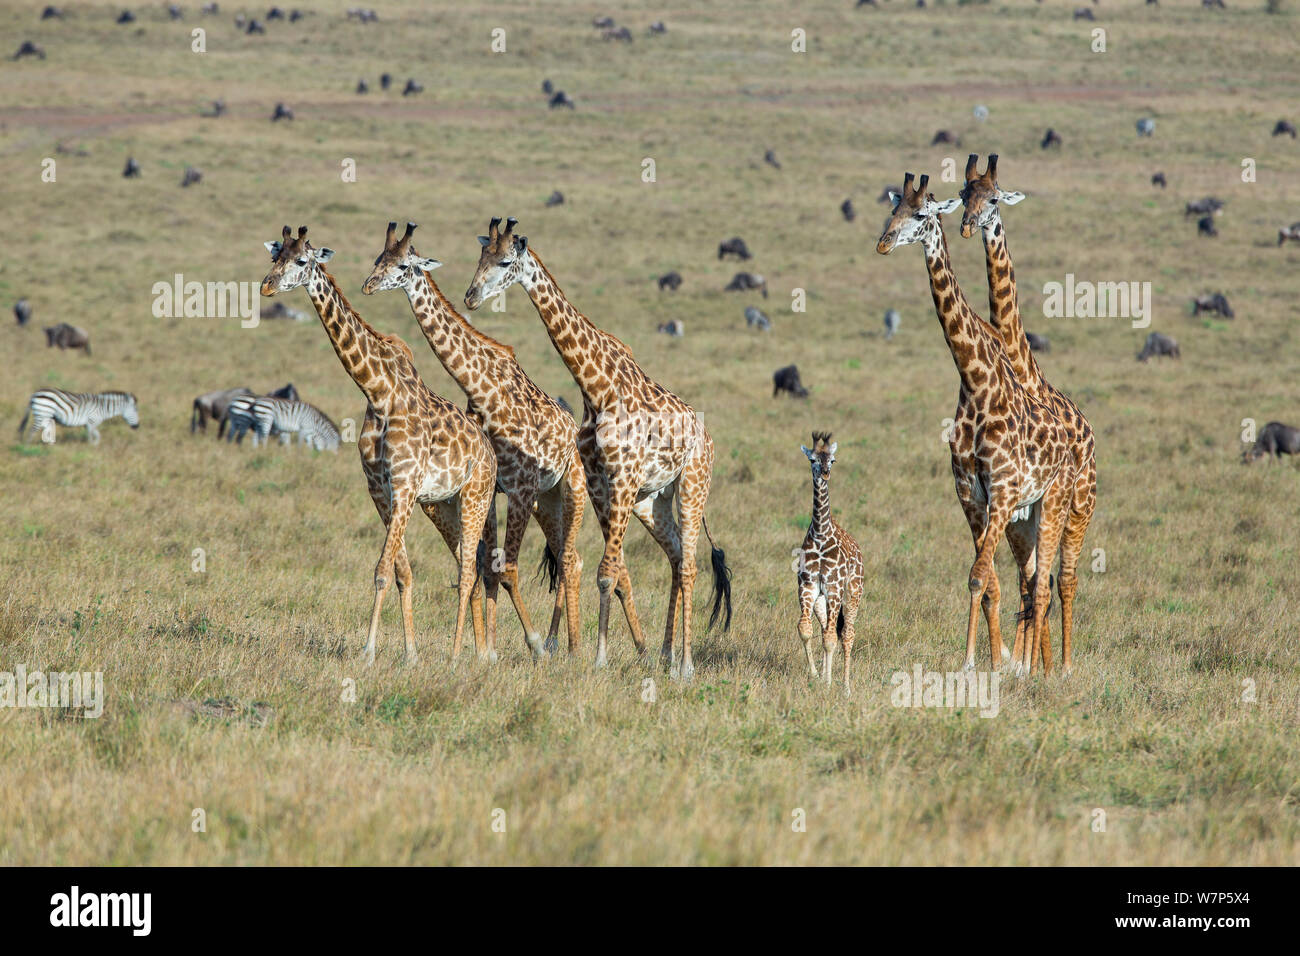 Masai Giraffe (Giraffa cameleopardalis tippelskirchi), Herde mit Baby- und verschiedenen Ebenen Säugetiere im Hintergrund. Masai-Mara Game Reserve, Kenia. Stockfoto